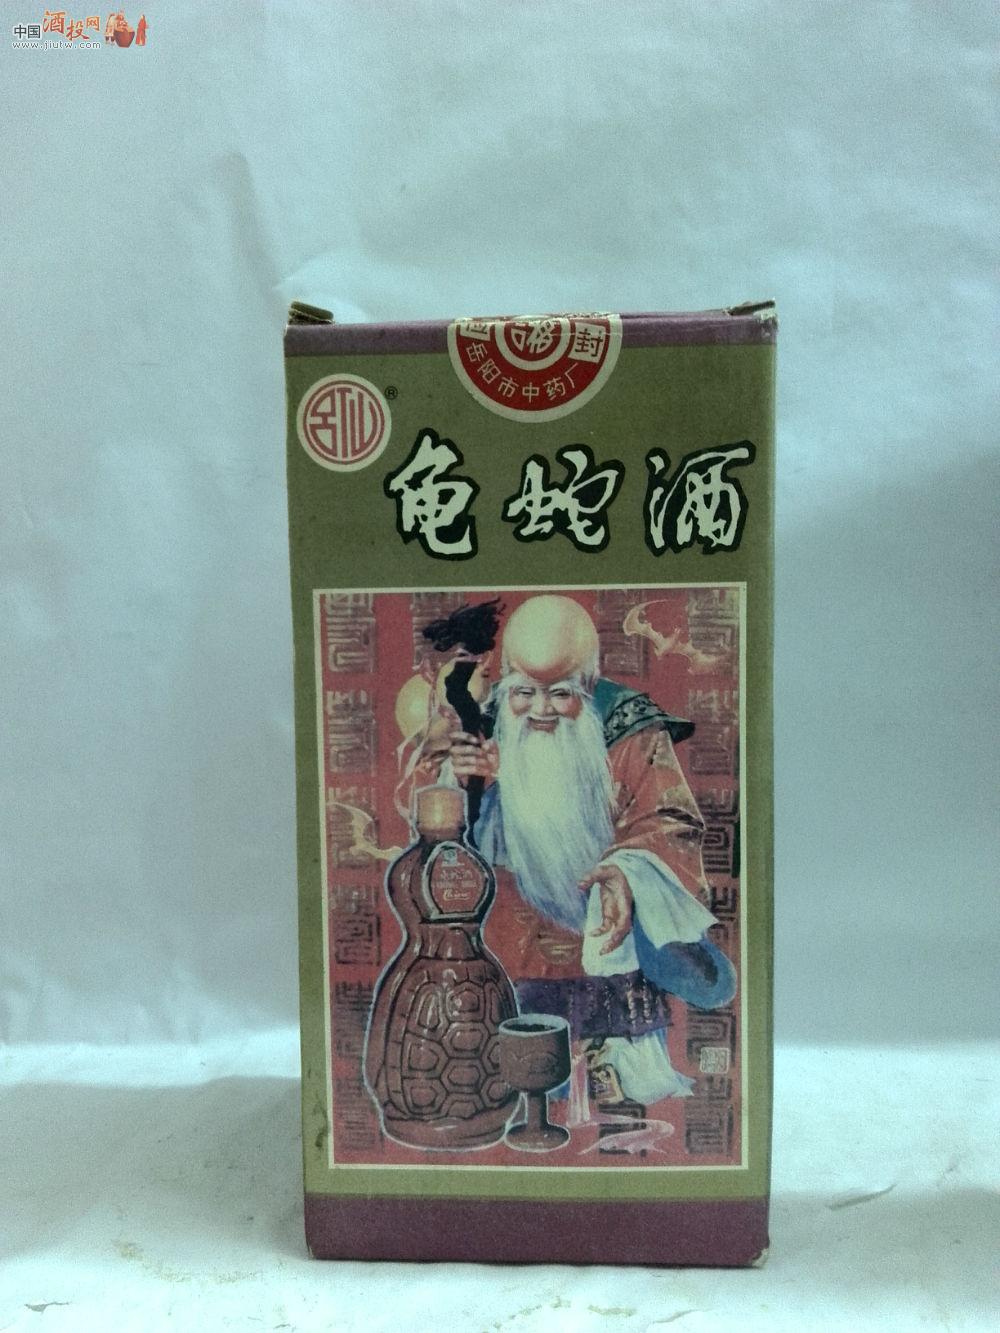 [已售]岳阳市中药厂:黄瓷瓶吕仙牌龟蛇酒1盒